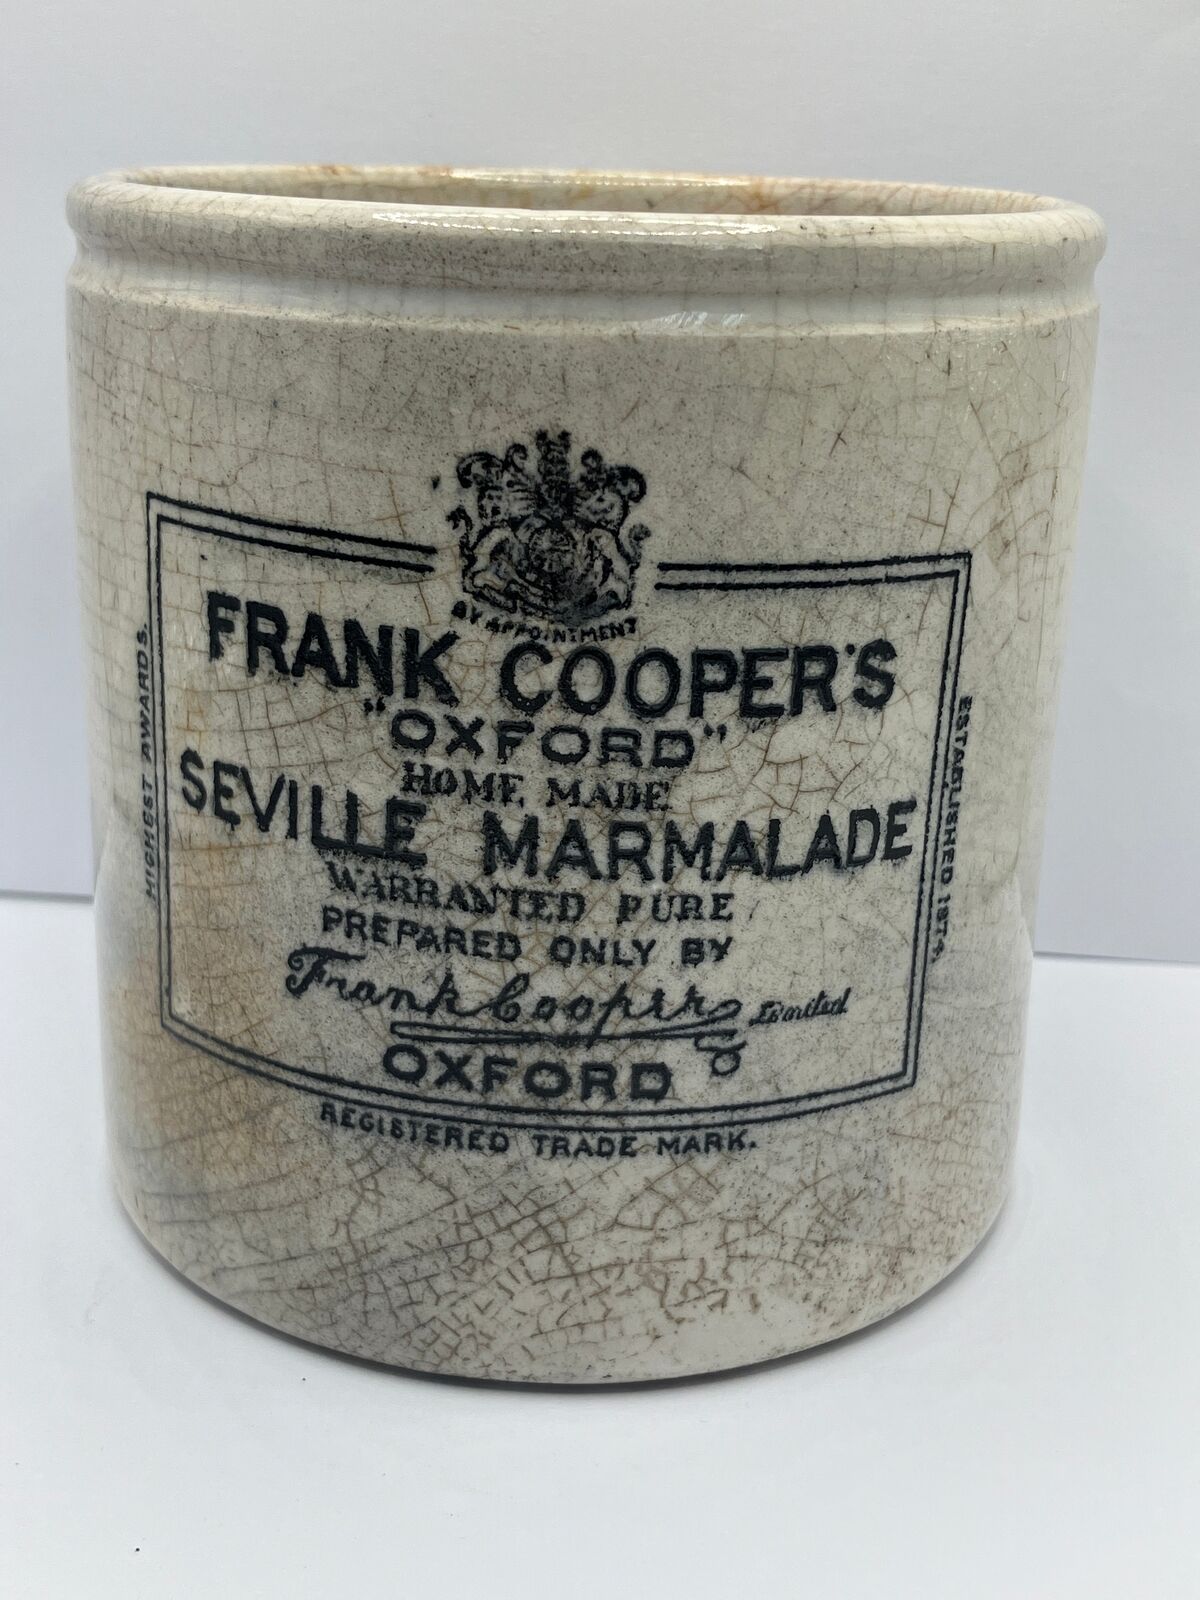 2lb Frank Coopers marmalade jar